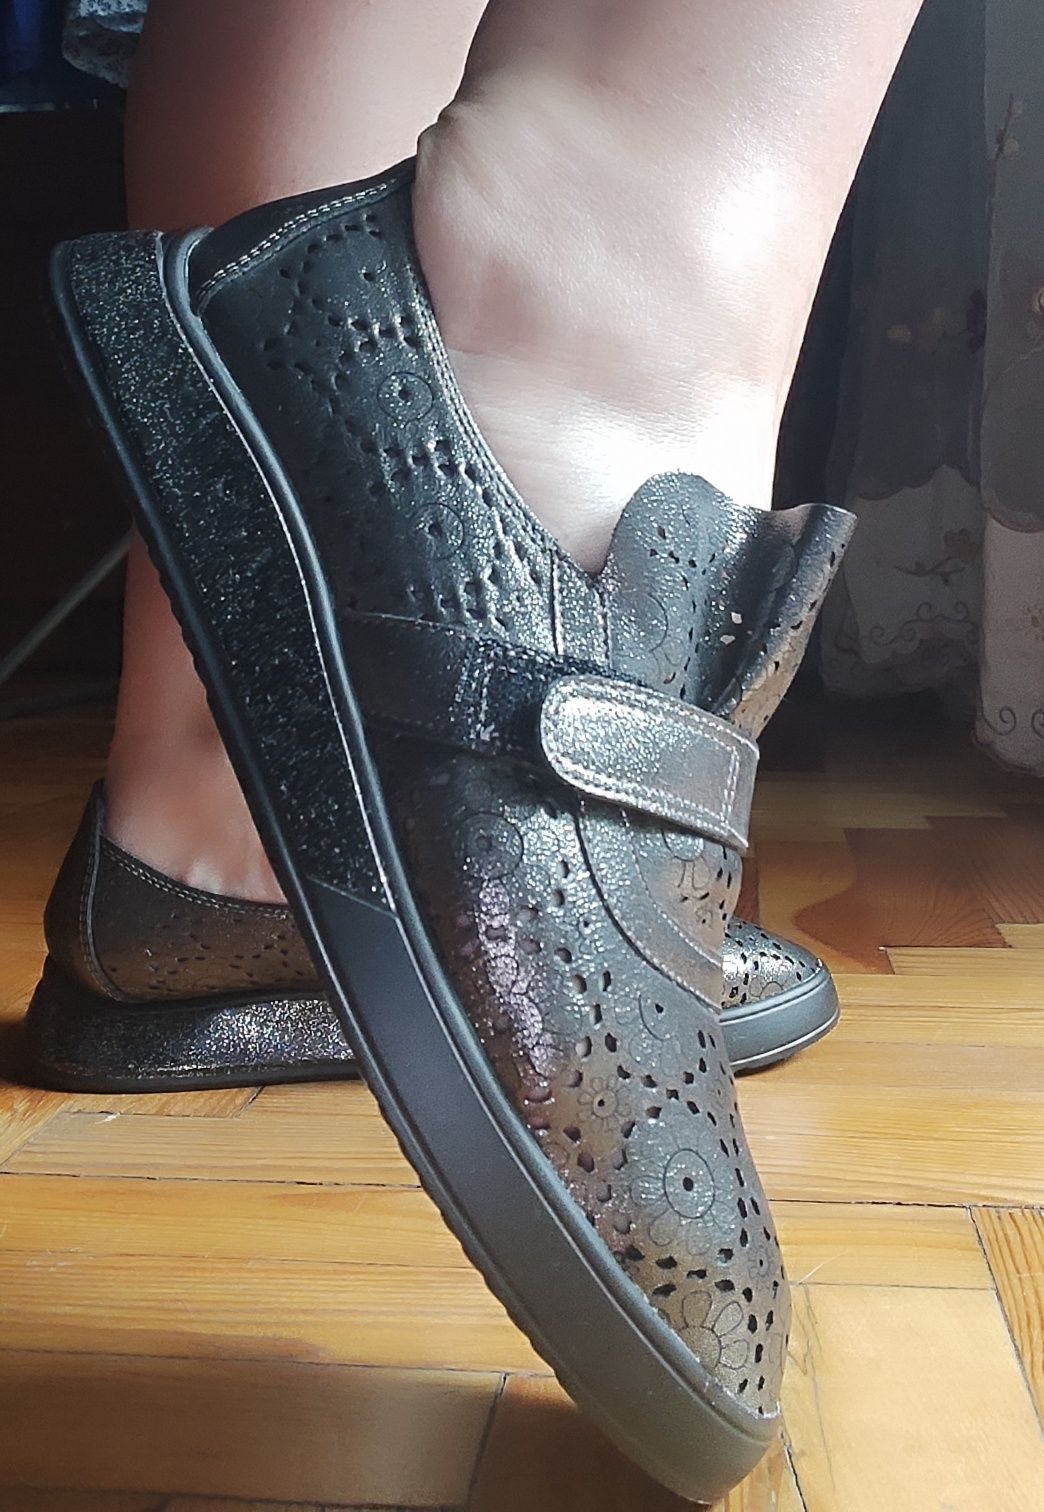 Продам туфли -мокасины пресованая кожа иНовые босоножки 38 размер